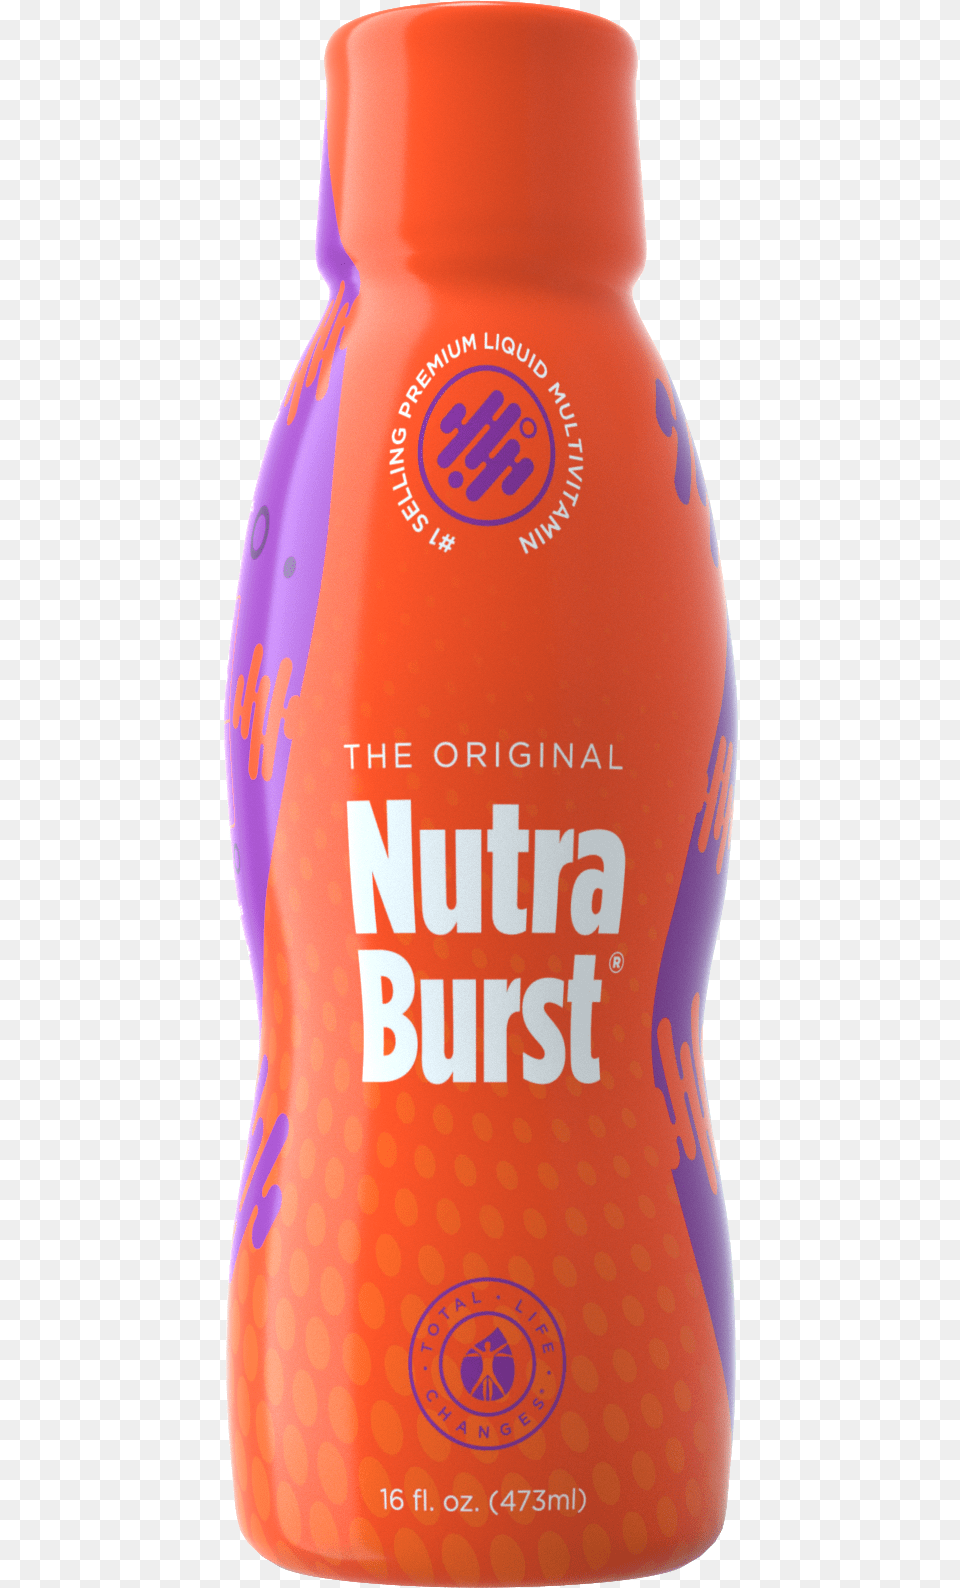 Nutra Burst, Beverage, Juice, Alcohol, Beer Free Png Download